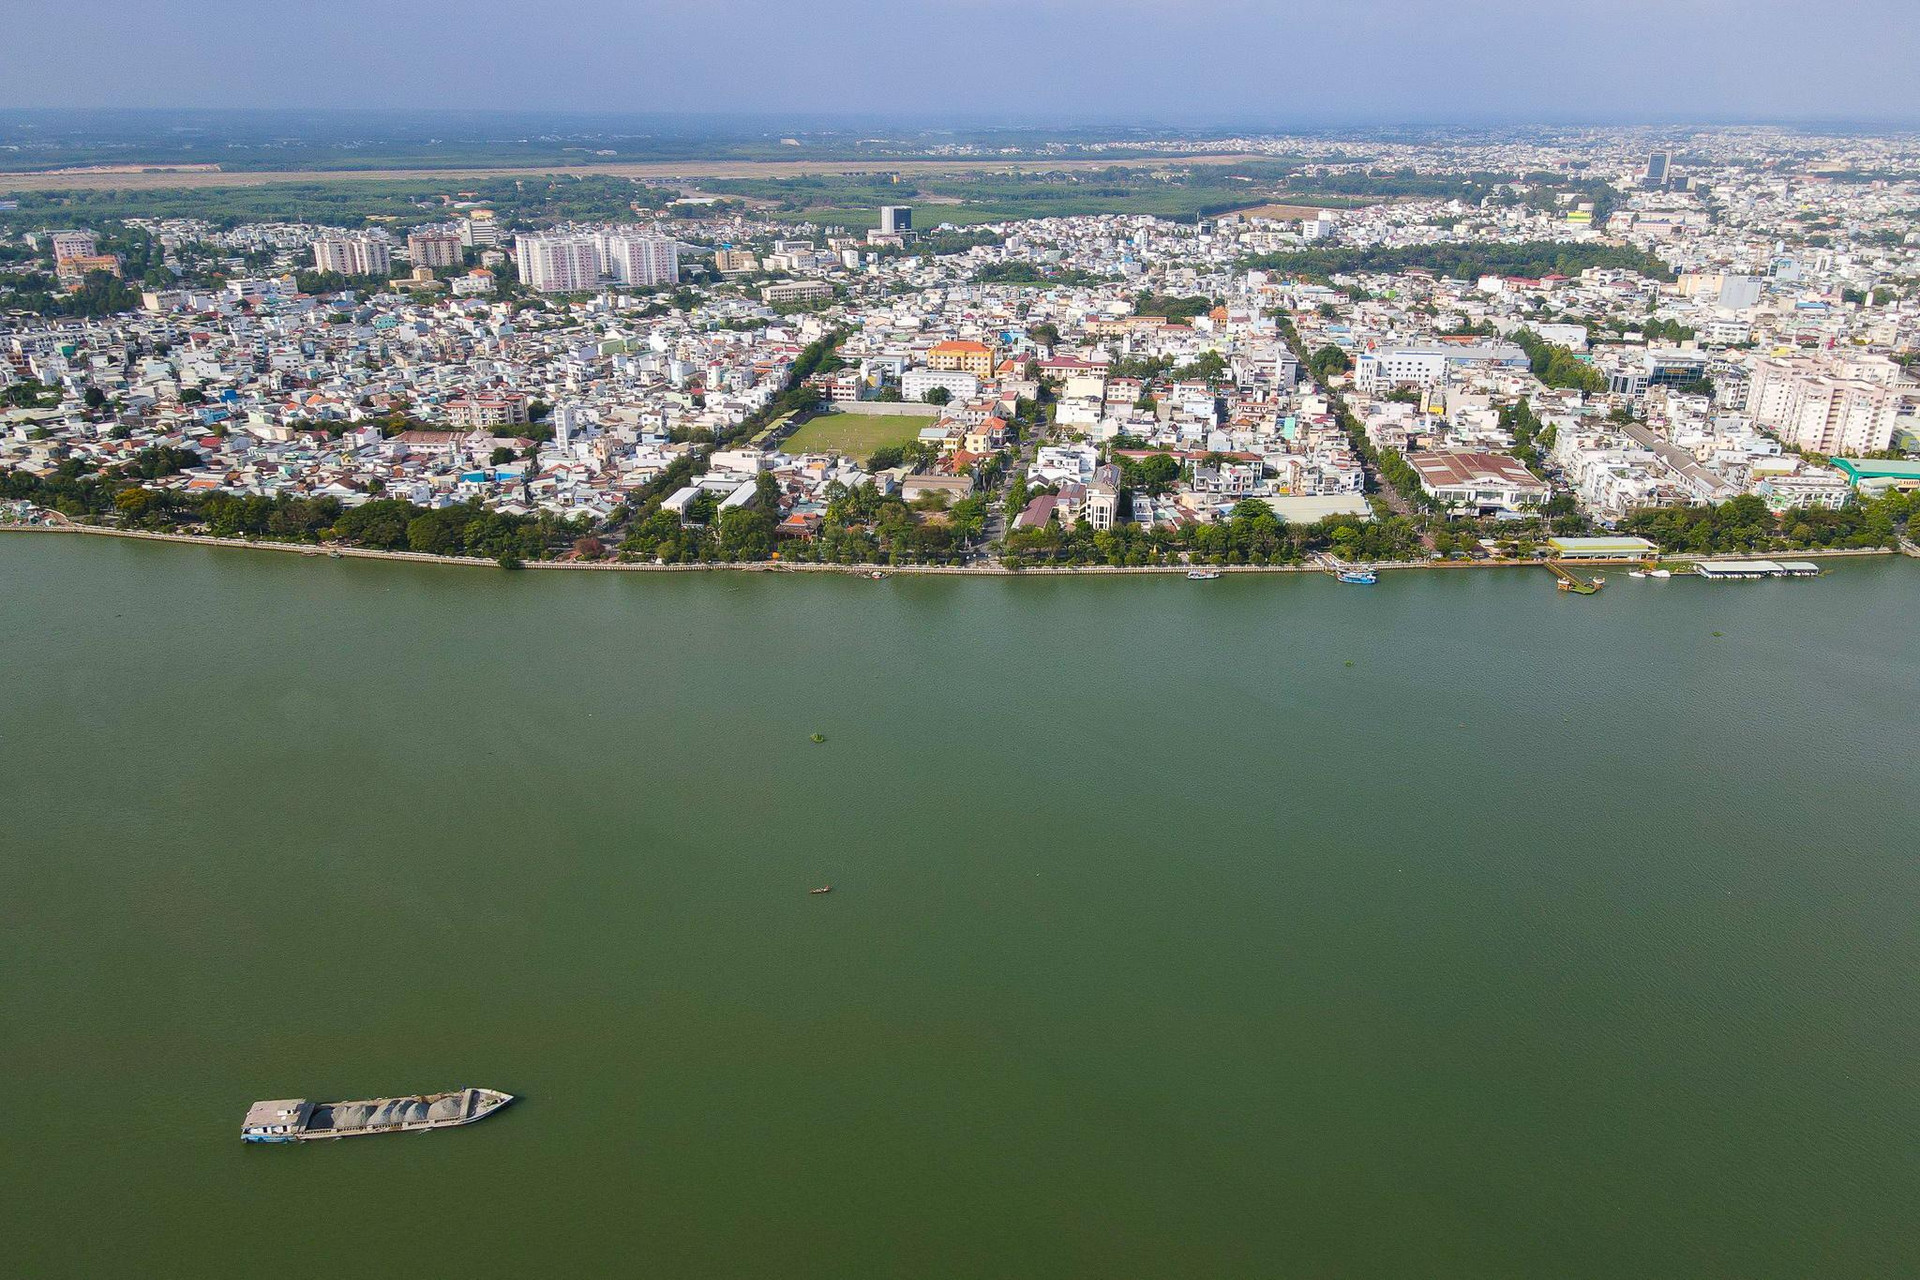 Diện mạo tỉnh có nhiều khu công nghiệp nhất Việt Nam - Ảnh 1.